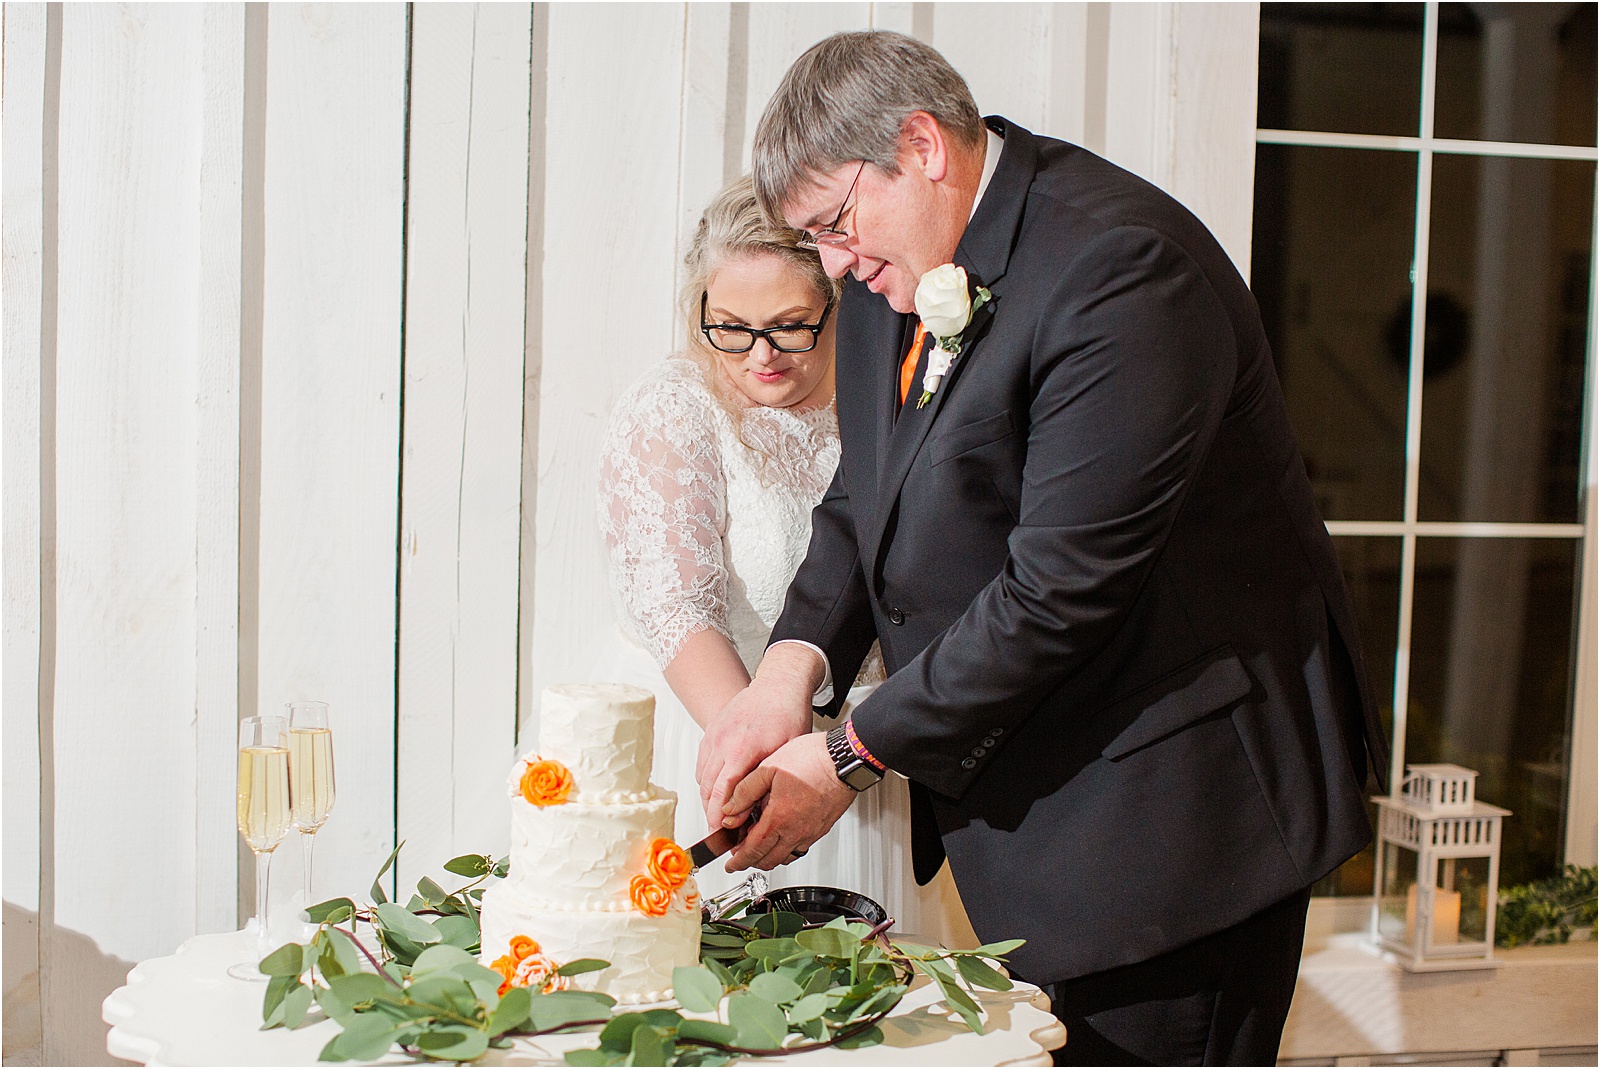 Newlyweds cutting wedding cake with orange flowers